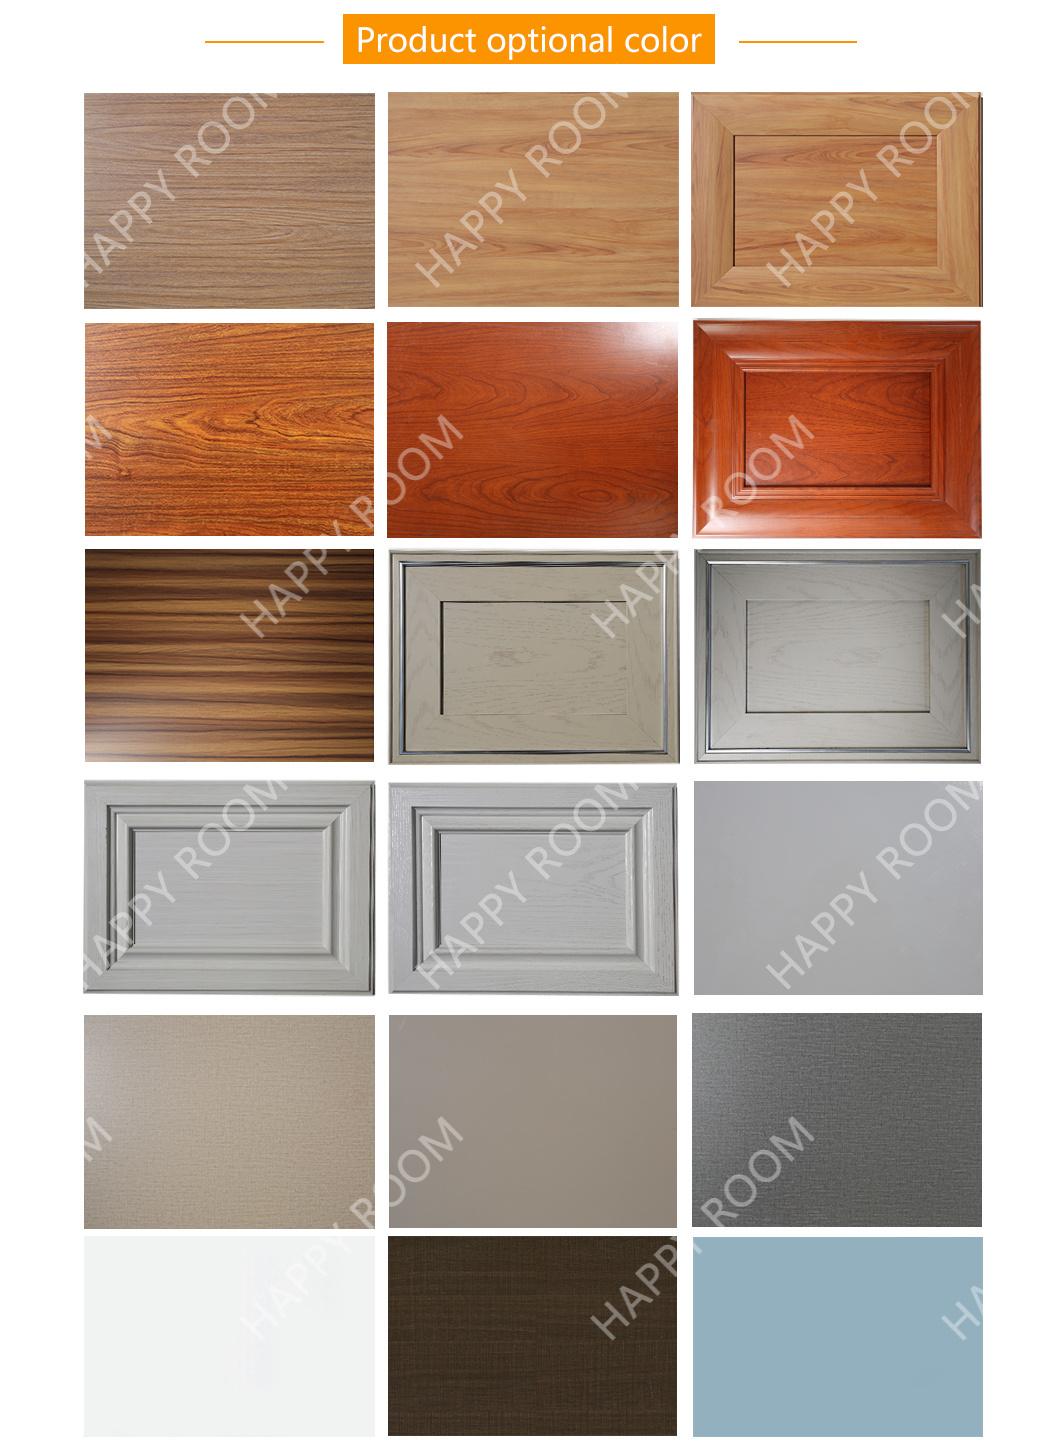 2021 Happyroom Aluminium /Aluminum Profile Cabinet Design Aluminum Kitchen Furniture